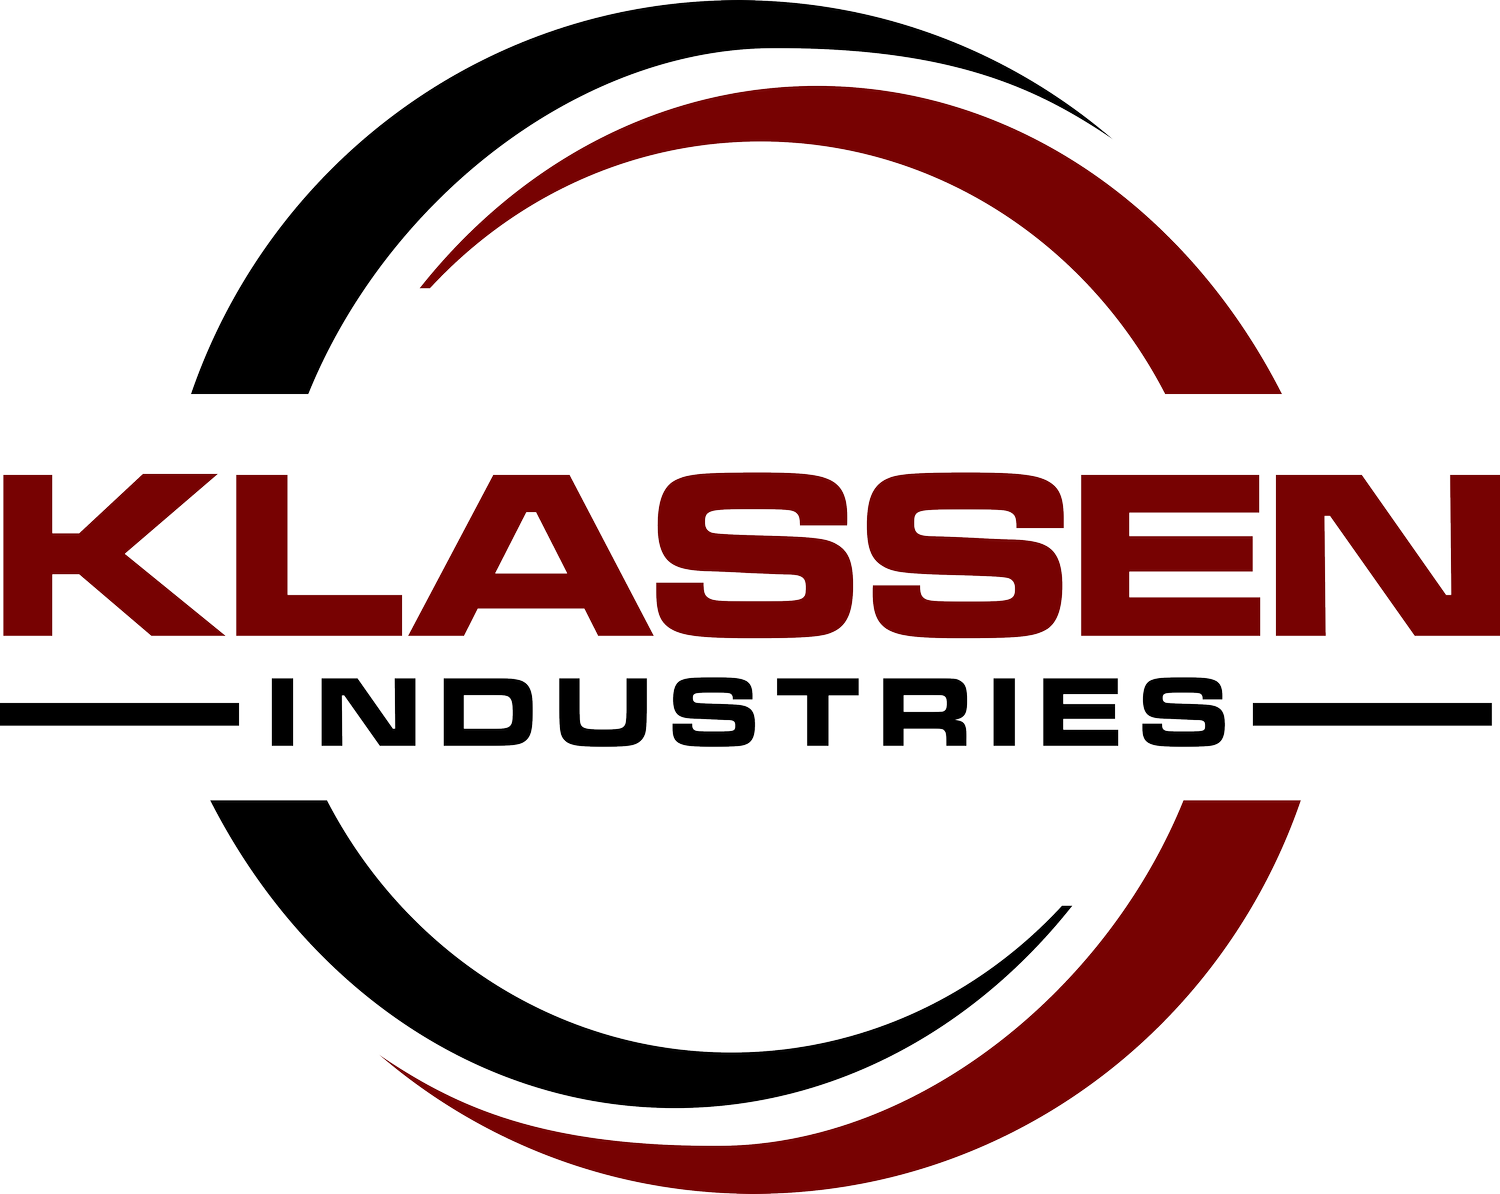 Klassen Industries Ltd.